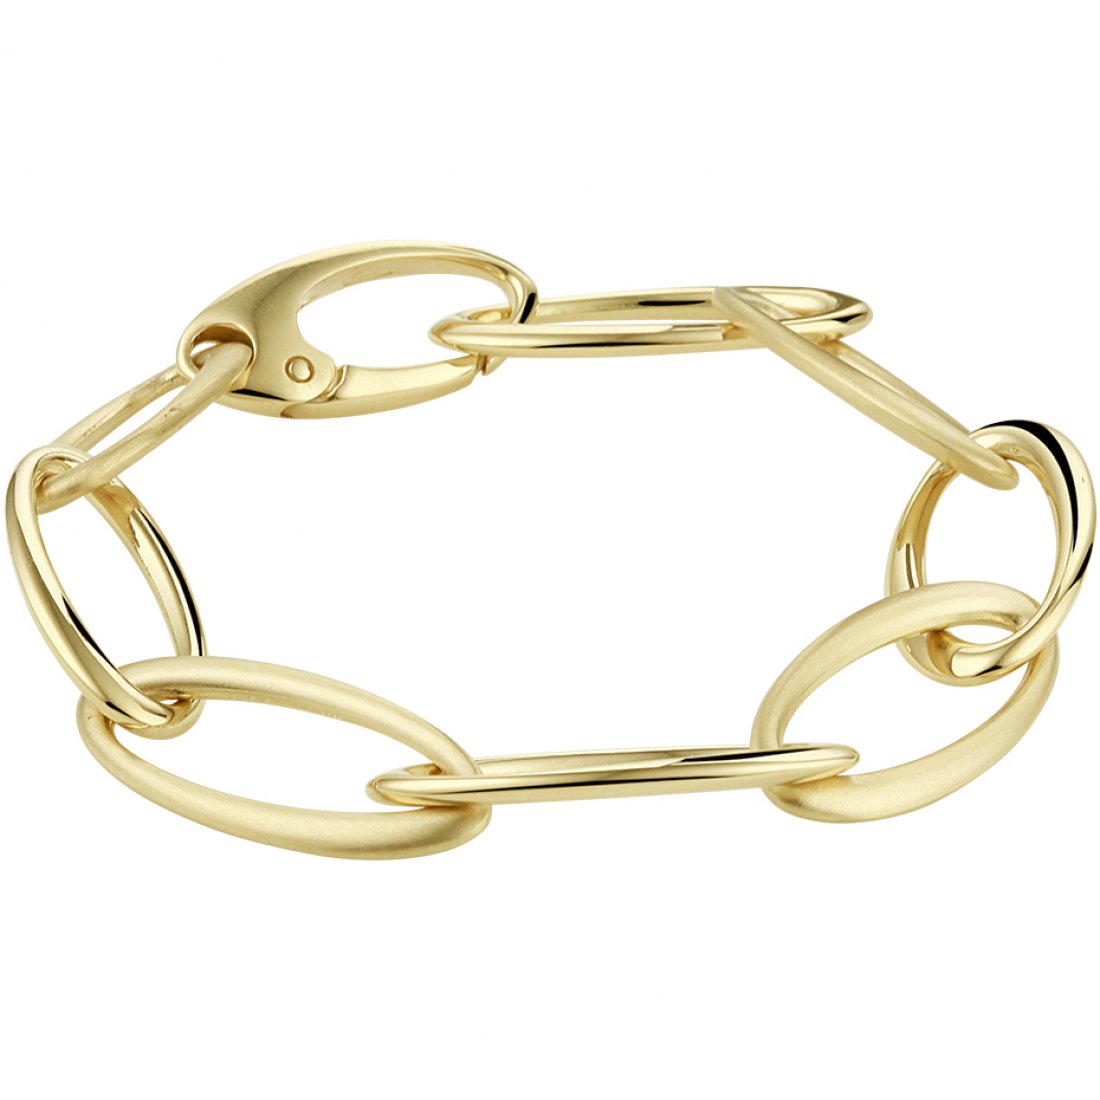 Populair Onheil planter 14 Karaat Gouden Armband / Anny van Buul Juweliers Sieraden